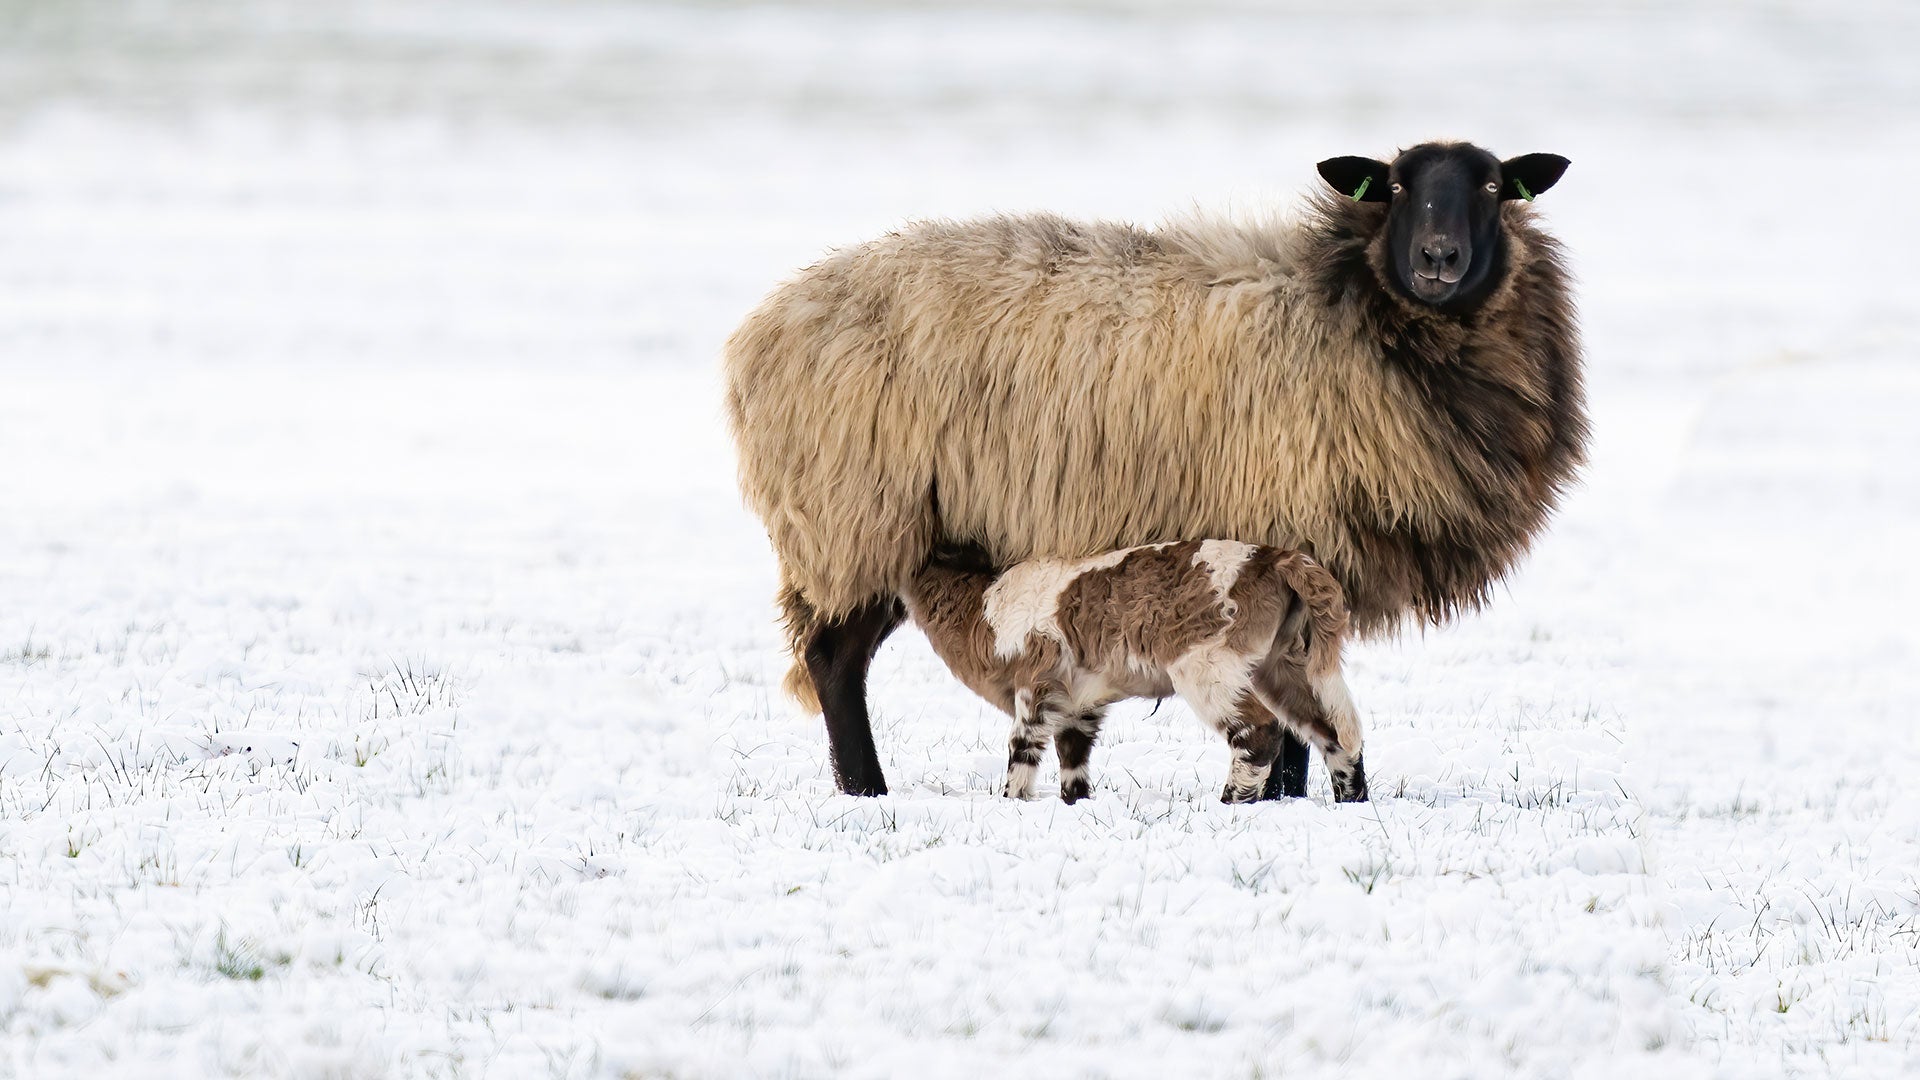 Ewe and lamb feeding in winter